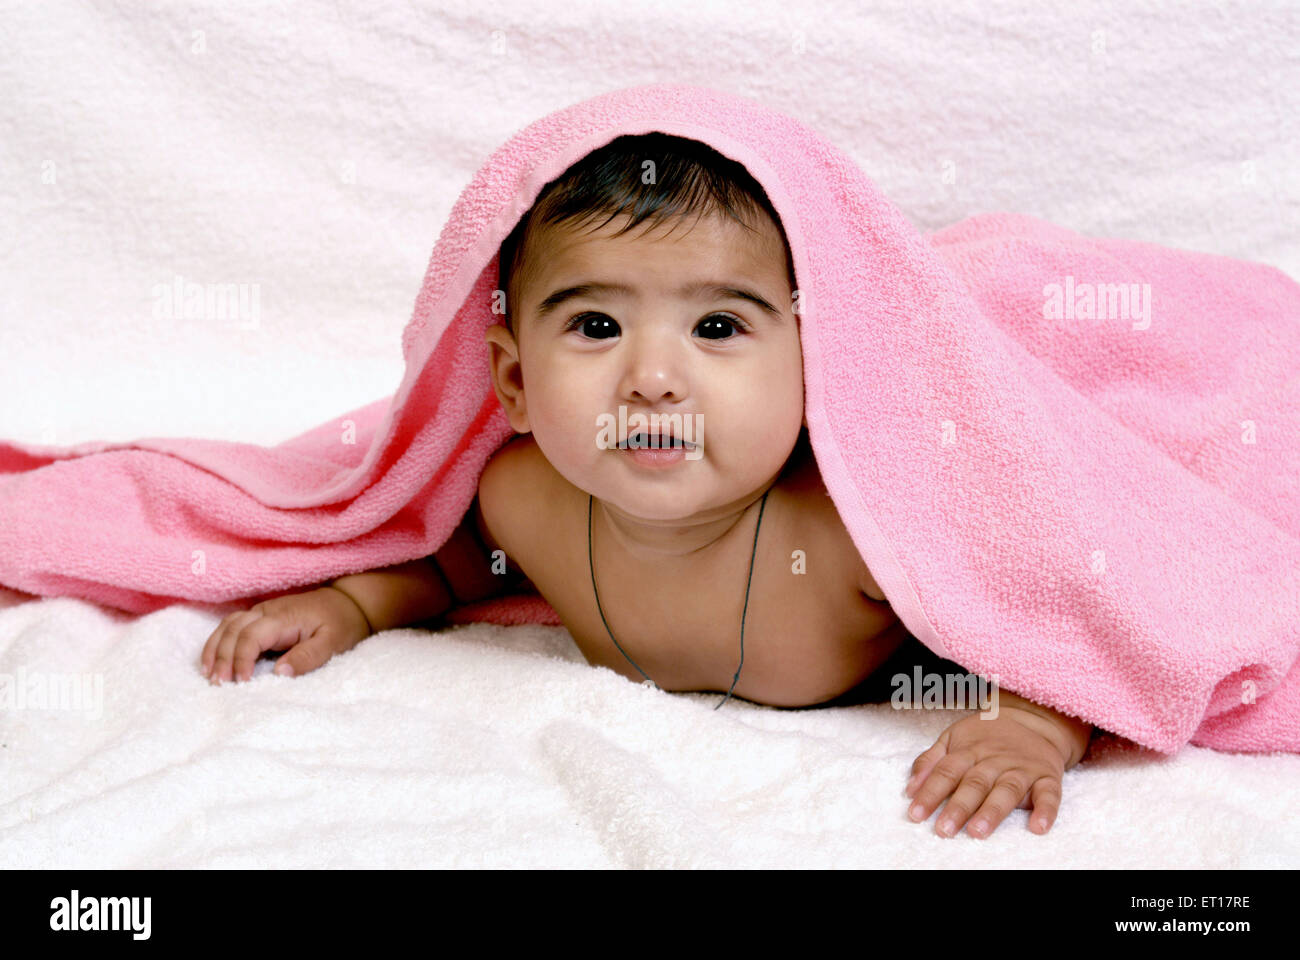 Baby Boy Abdeckung Kopf mit einem rosa Handtuch Indien Asien Herr #364 Stockfoto